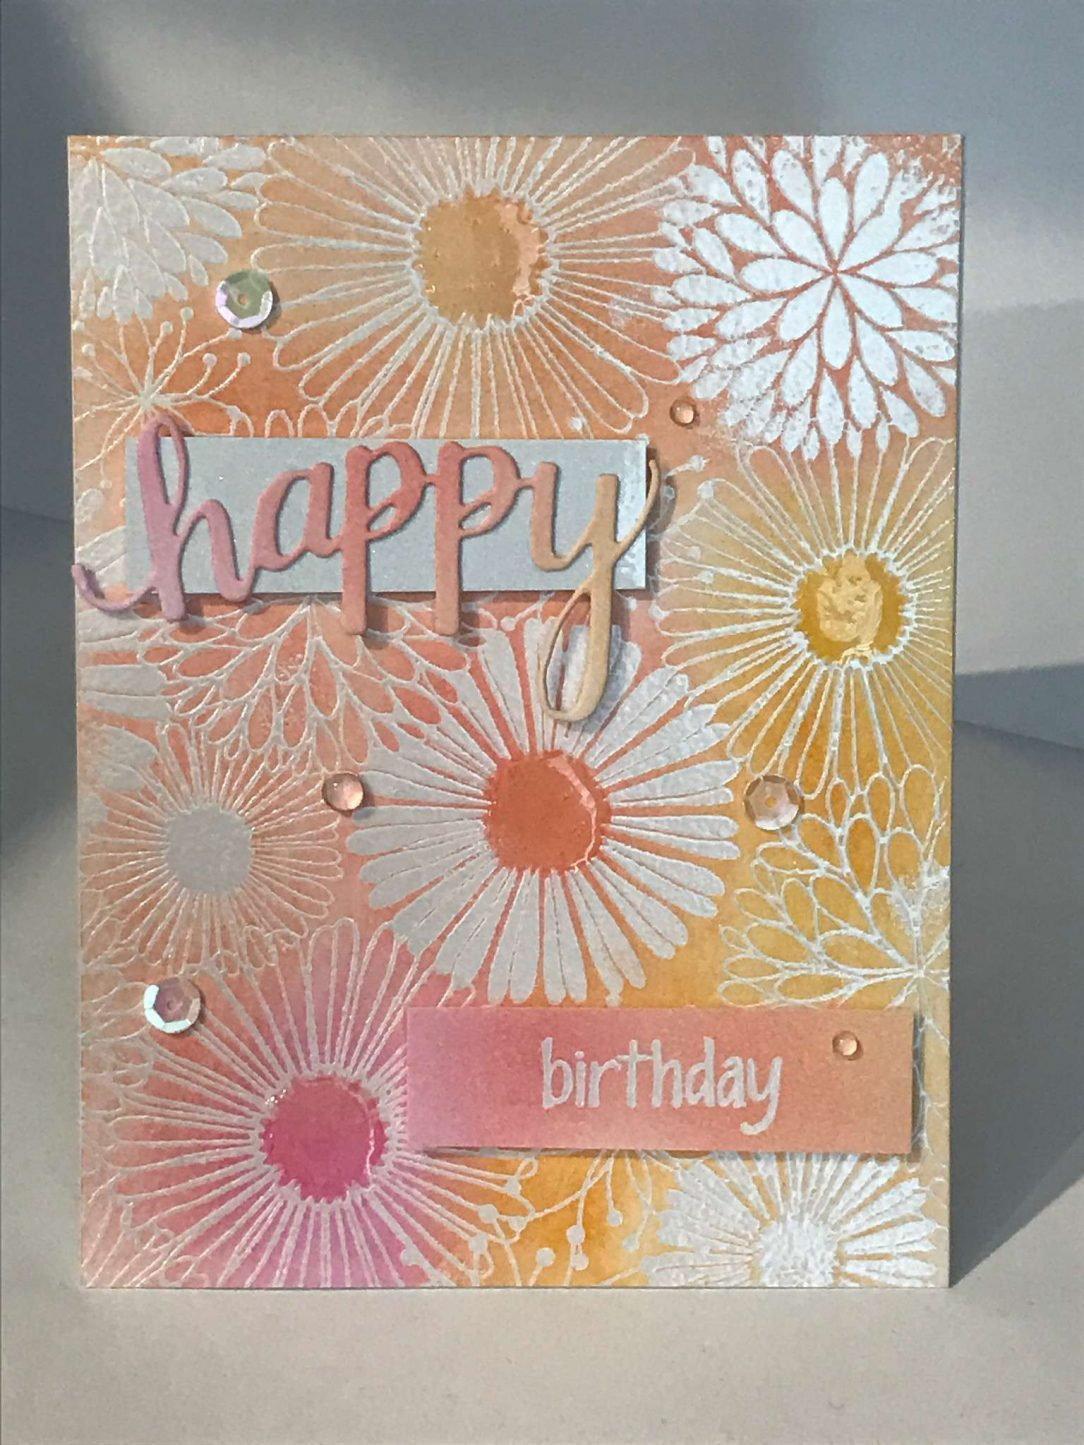 Birthday Card Ideas For Teachers Birthday Cards For Teachers Ideas Best Idea For Teacher Birthday